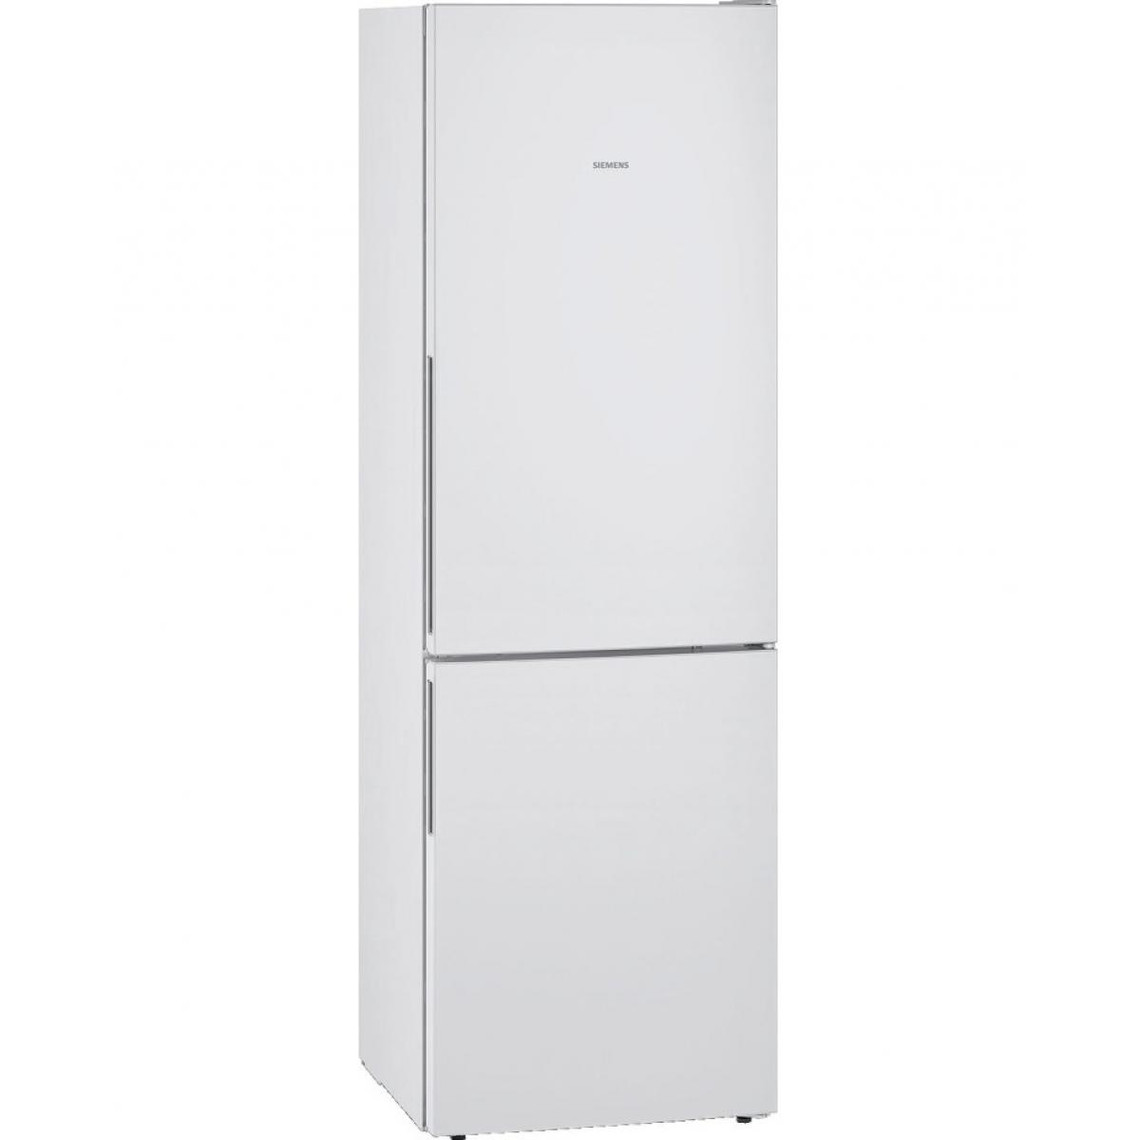 Siemens Réfrigérateur combiné - pose libre - IQ300 - Blanc - A++